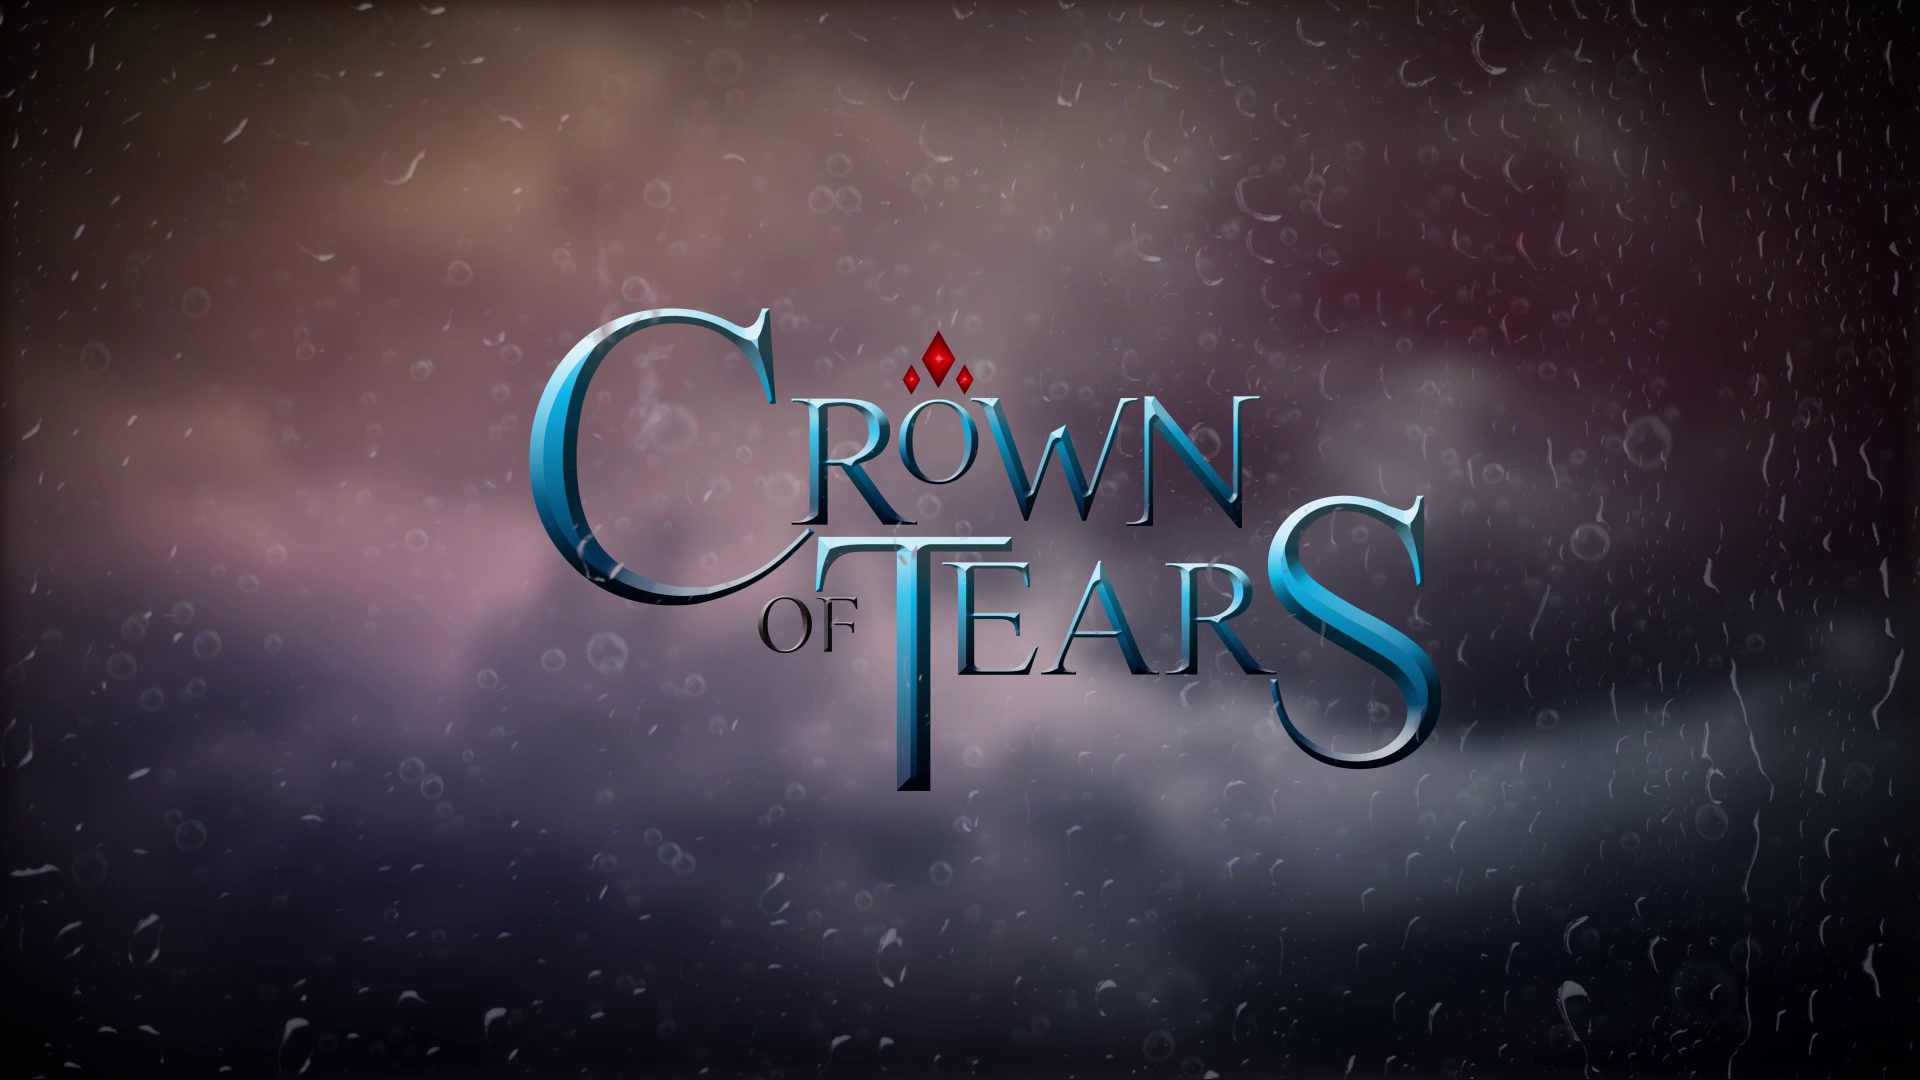 CROWN OF TEARS Premieres August 14